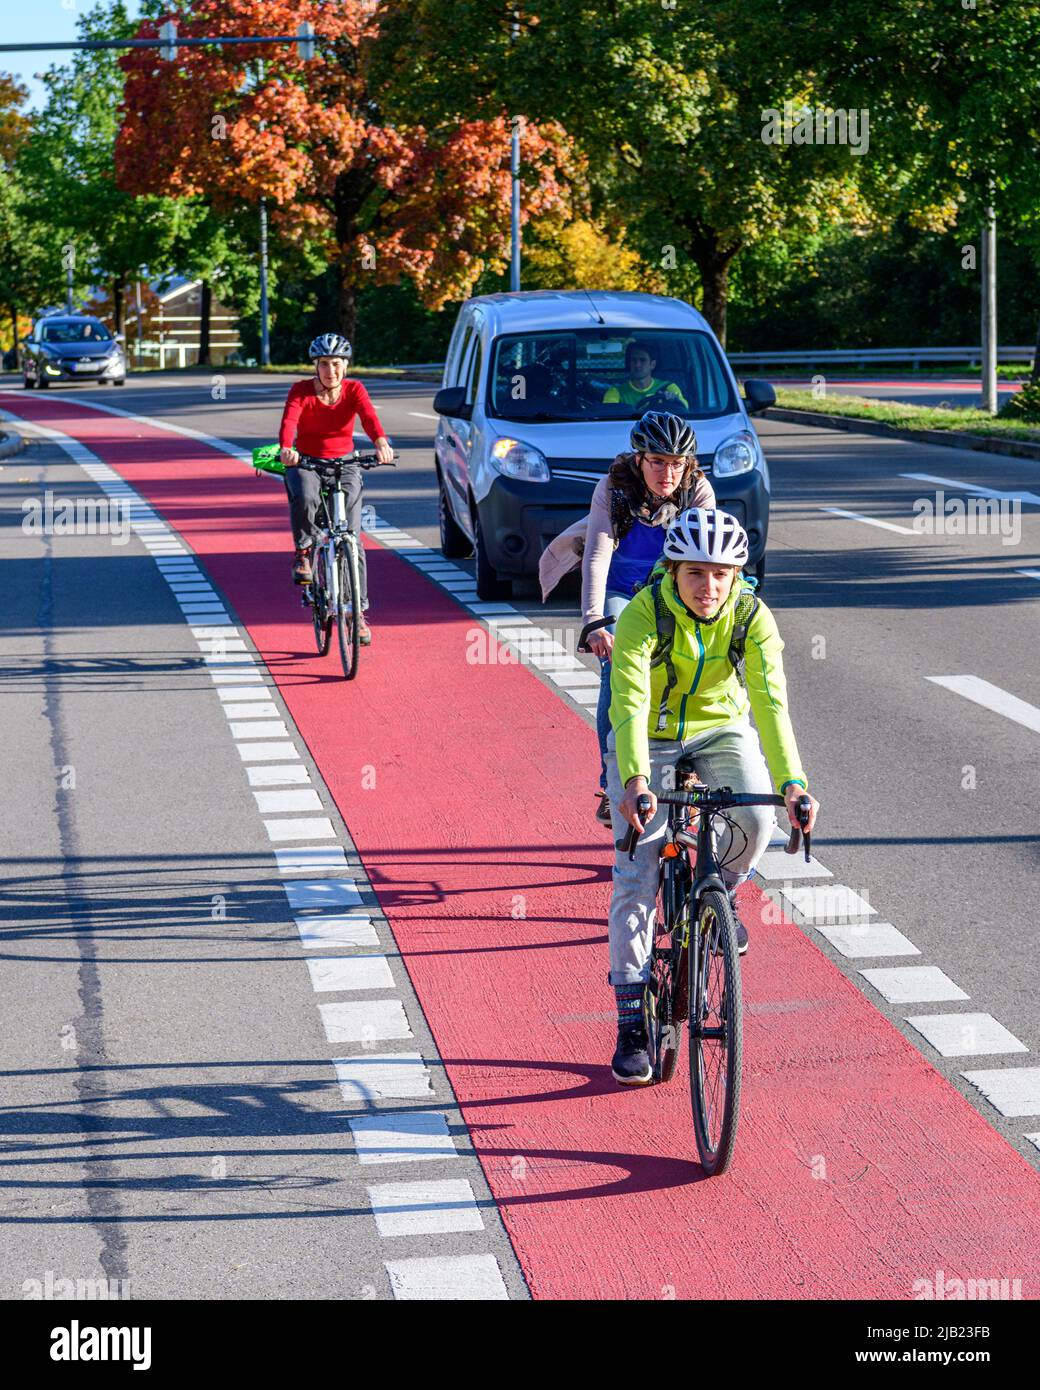 La mobilità in bicicletta e pedelec nelle aree urbane è una sfida per la futura pianificazione dei trasporti. Foto Stock